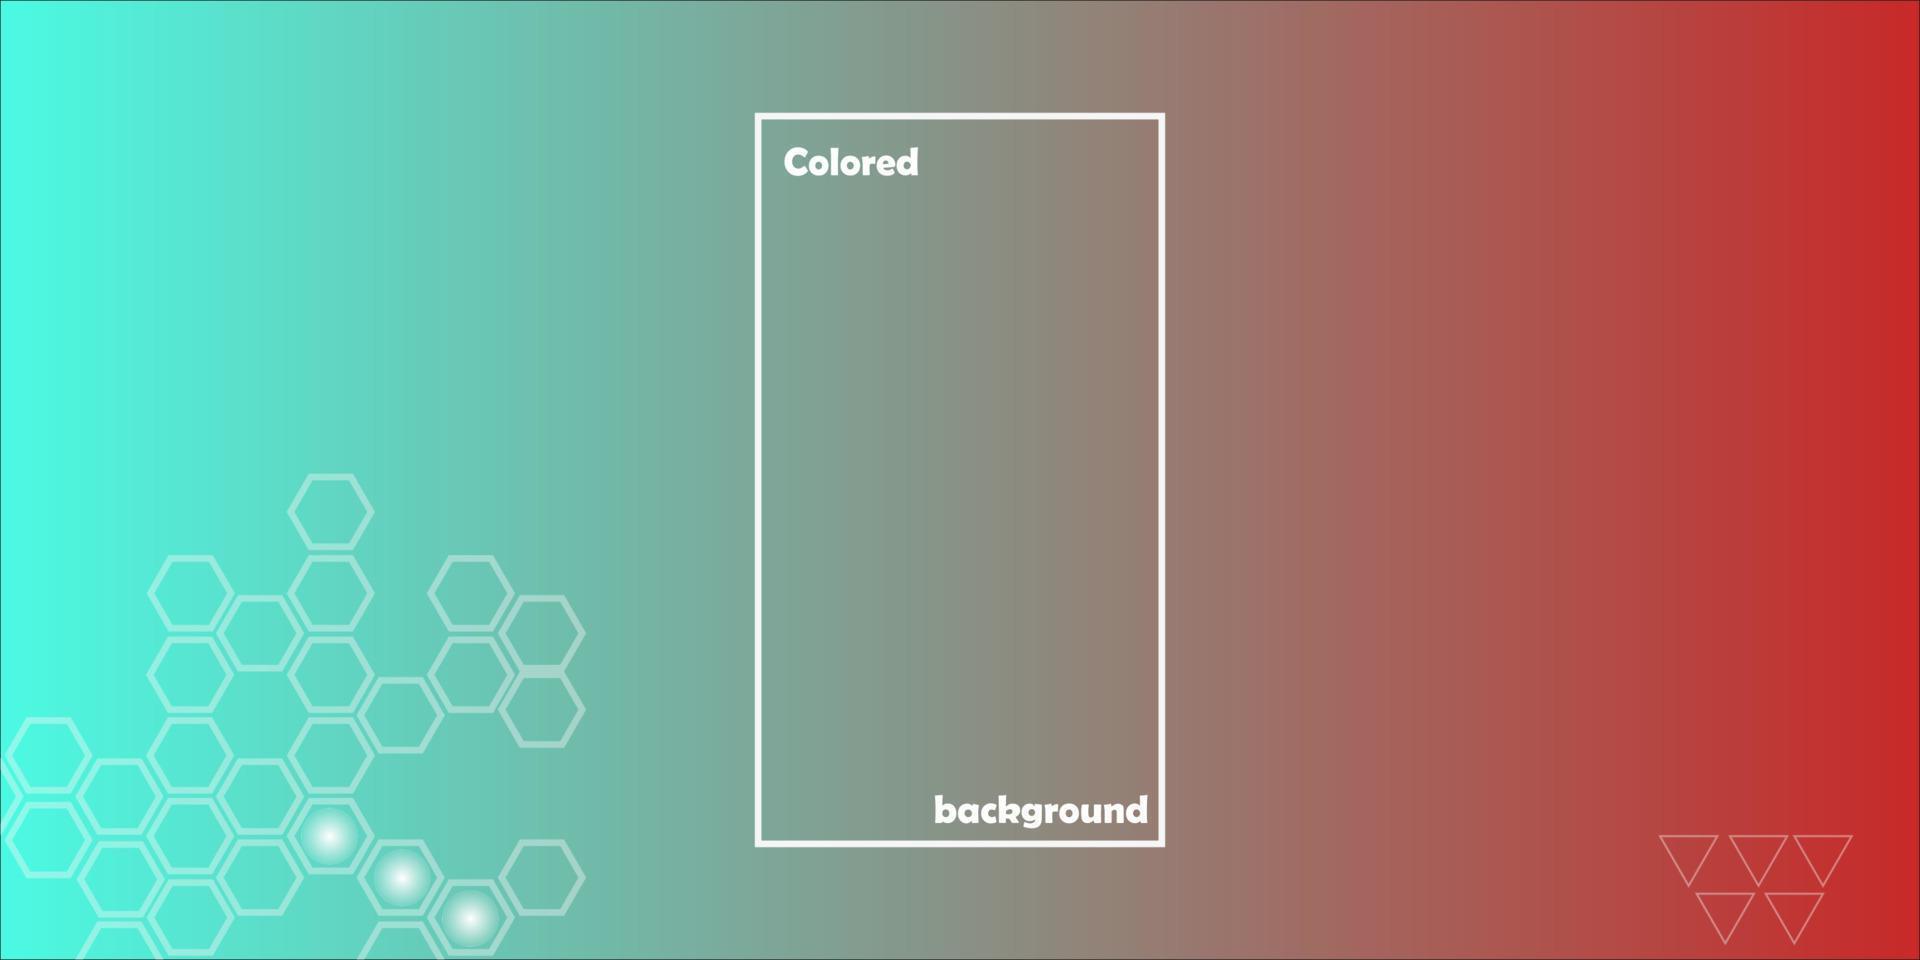 conjunto de fundos abstratos horizontais com padrão de retângulo em cores gradientes vermelhas e azuis. coleção de texturas gradientes com ornamentos geométricos. panfleto, banner, capa, pôster ou web design. vetor